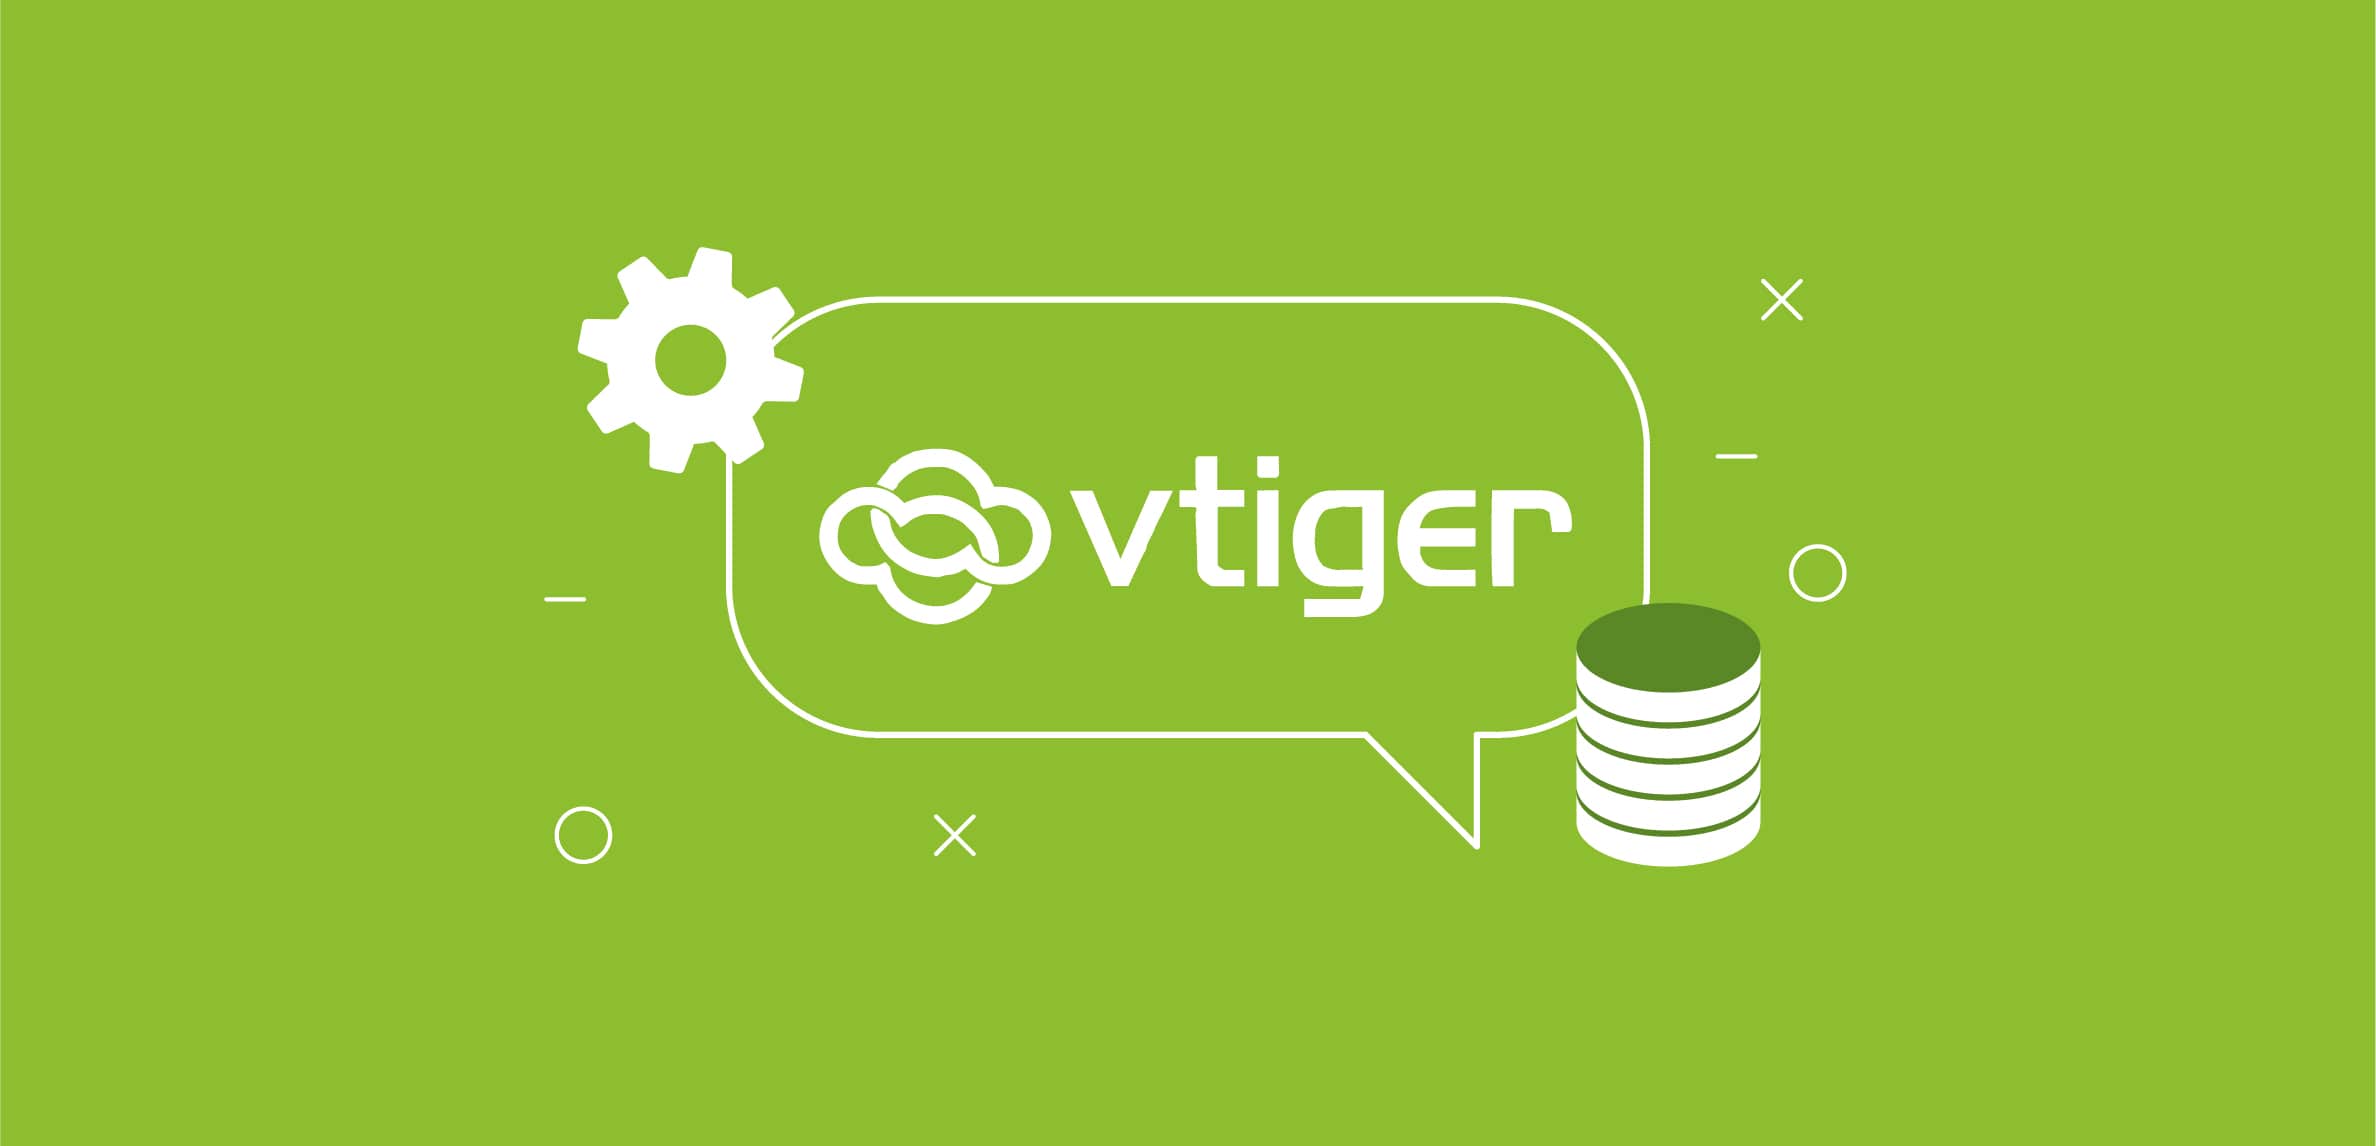 Perché Vtiger è uno dei migliori CRM del settore?